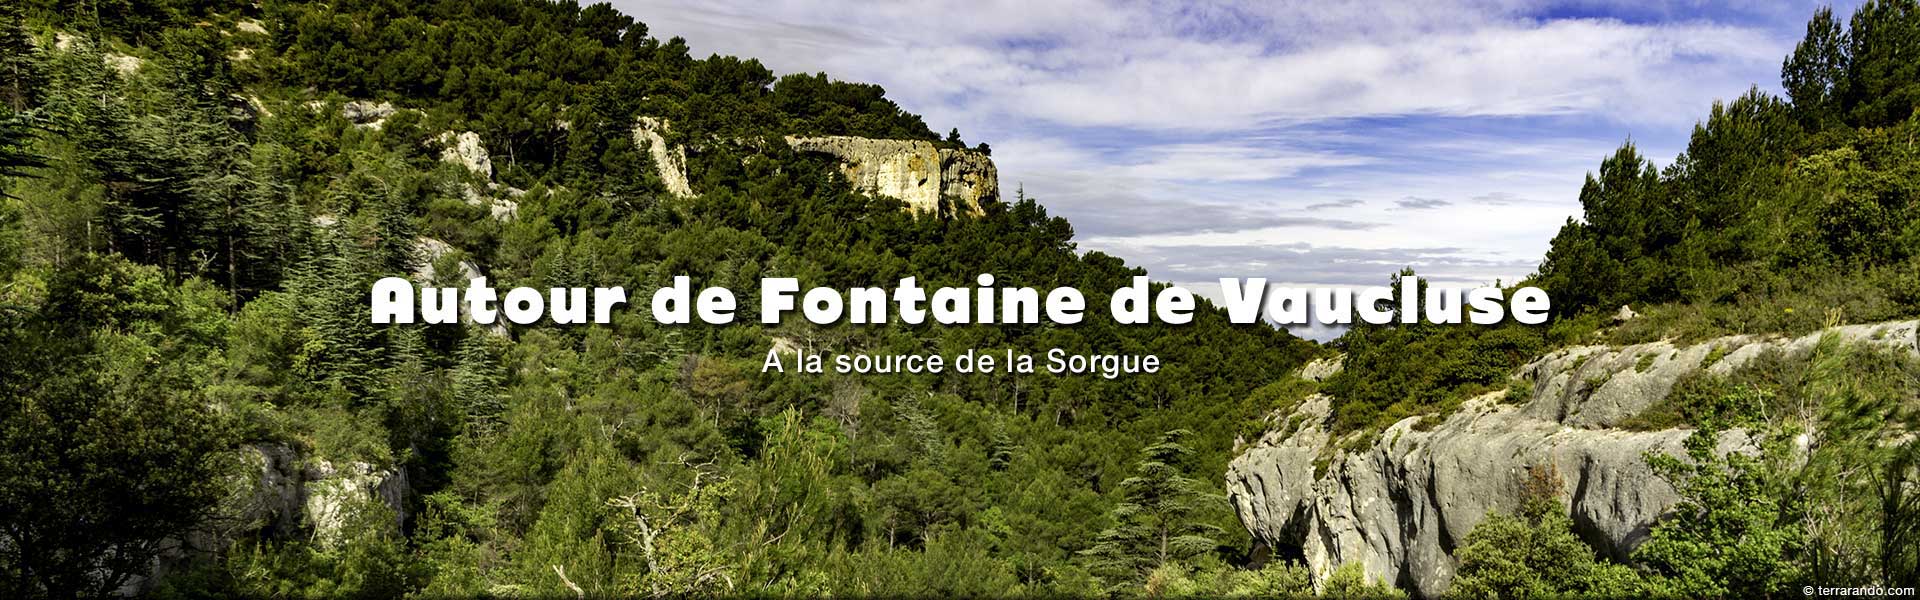 week-end randonnées autour de Fontaine de Vaucluse